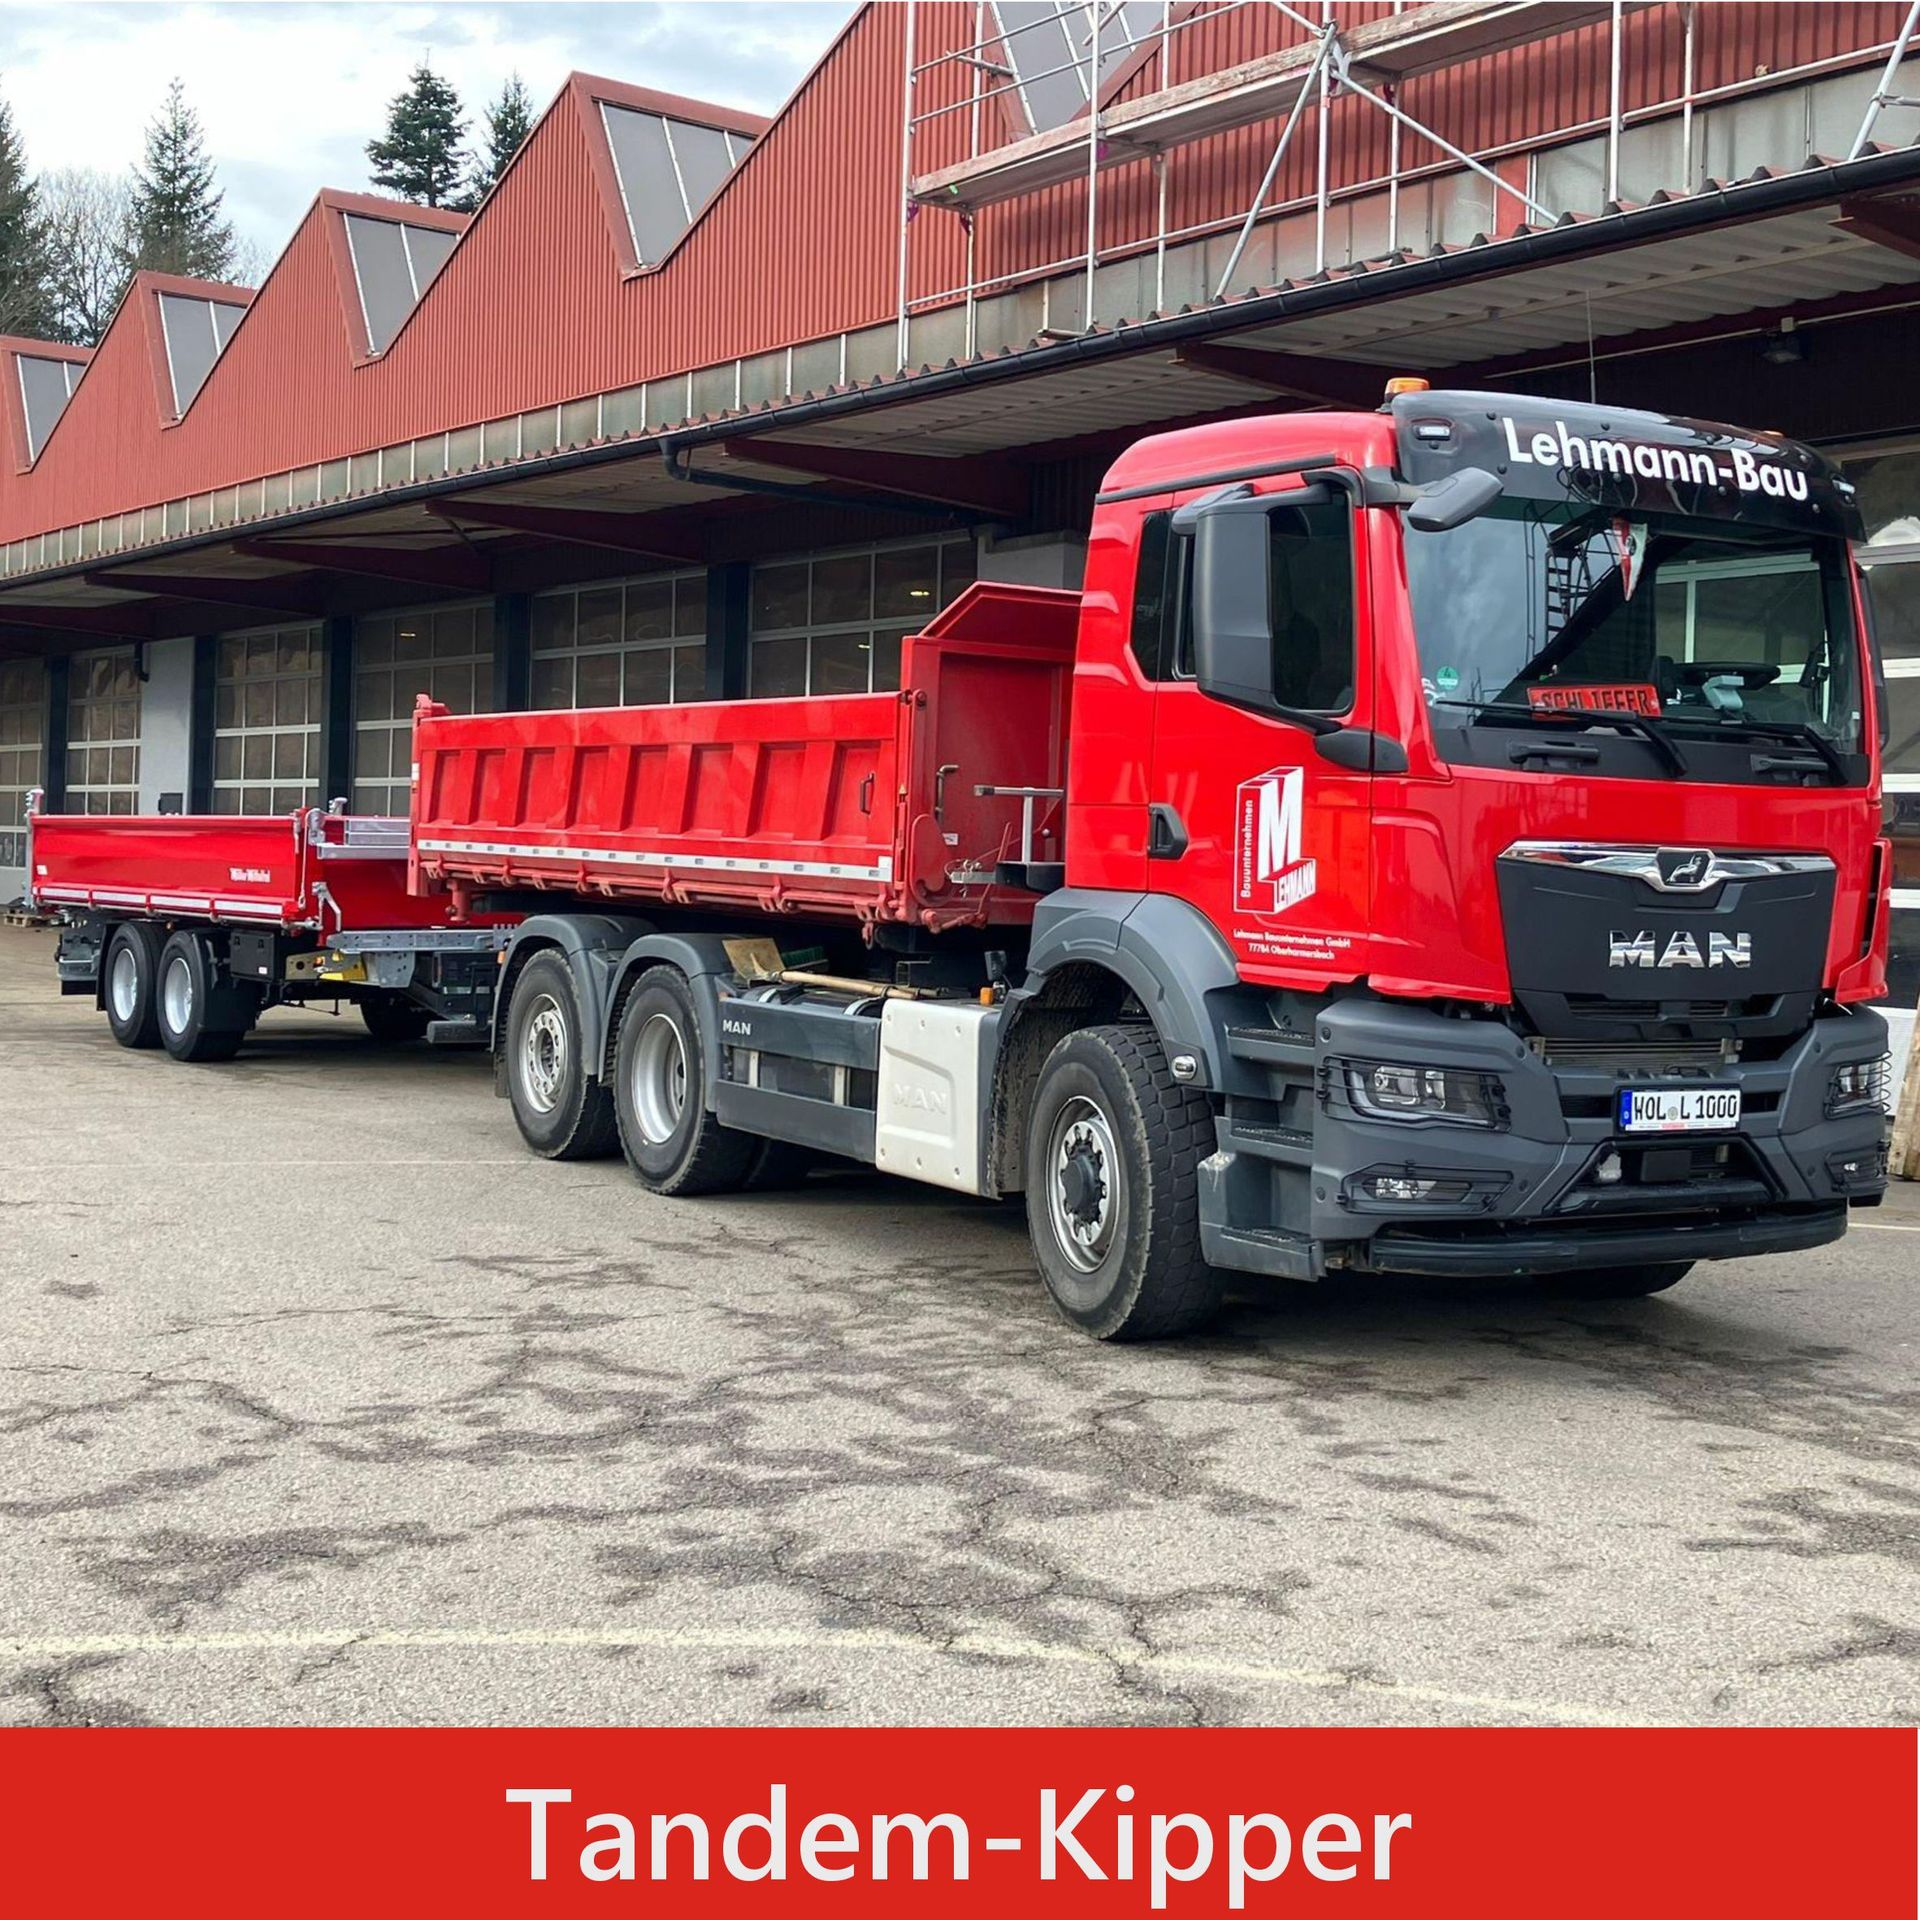 Tandem-Kipper